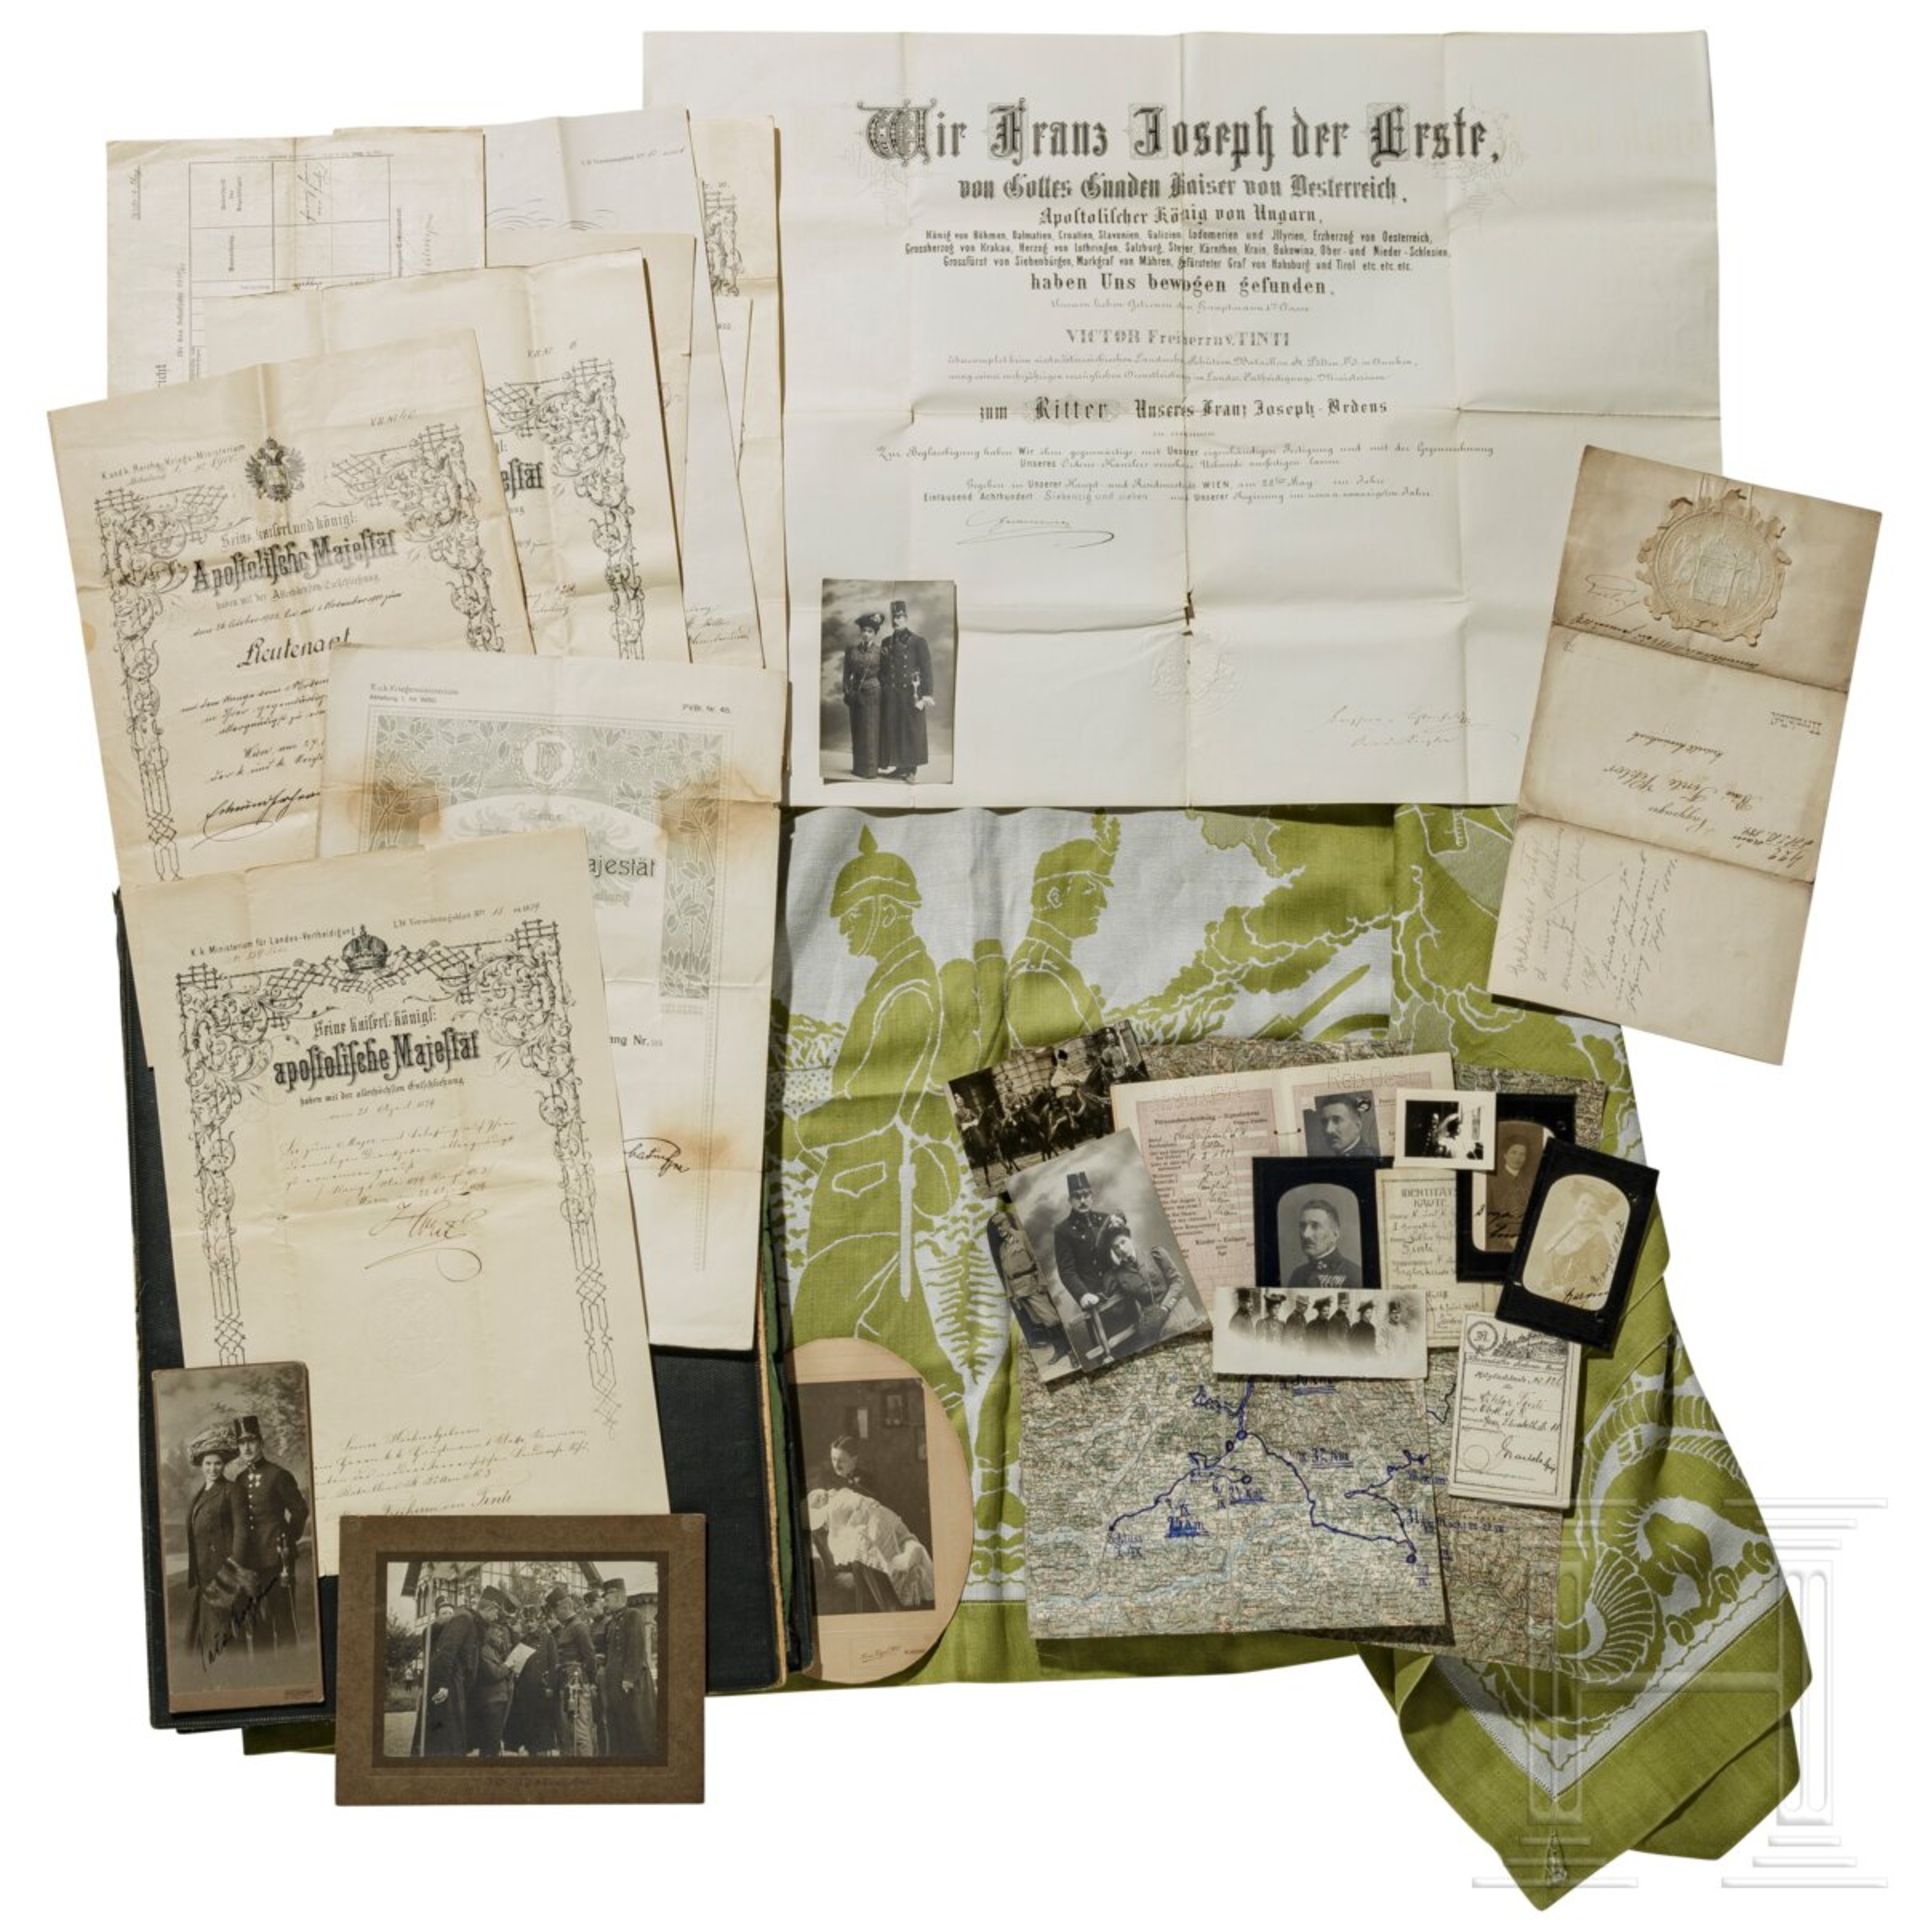 Major Viktor Freiherr von Tinti (1881 - 1931) - große Mappe mit Dokumenten, Fotos, Ausweisen etc.